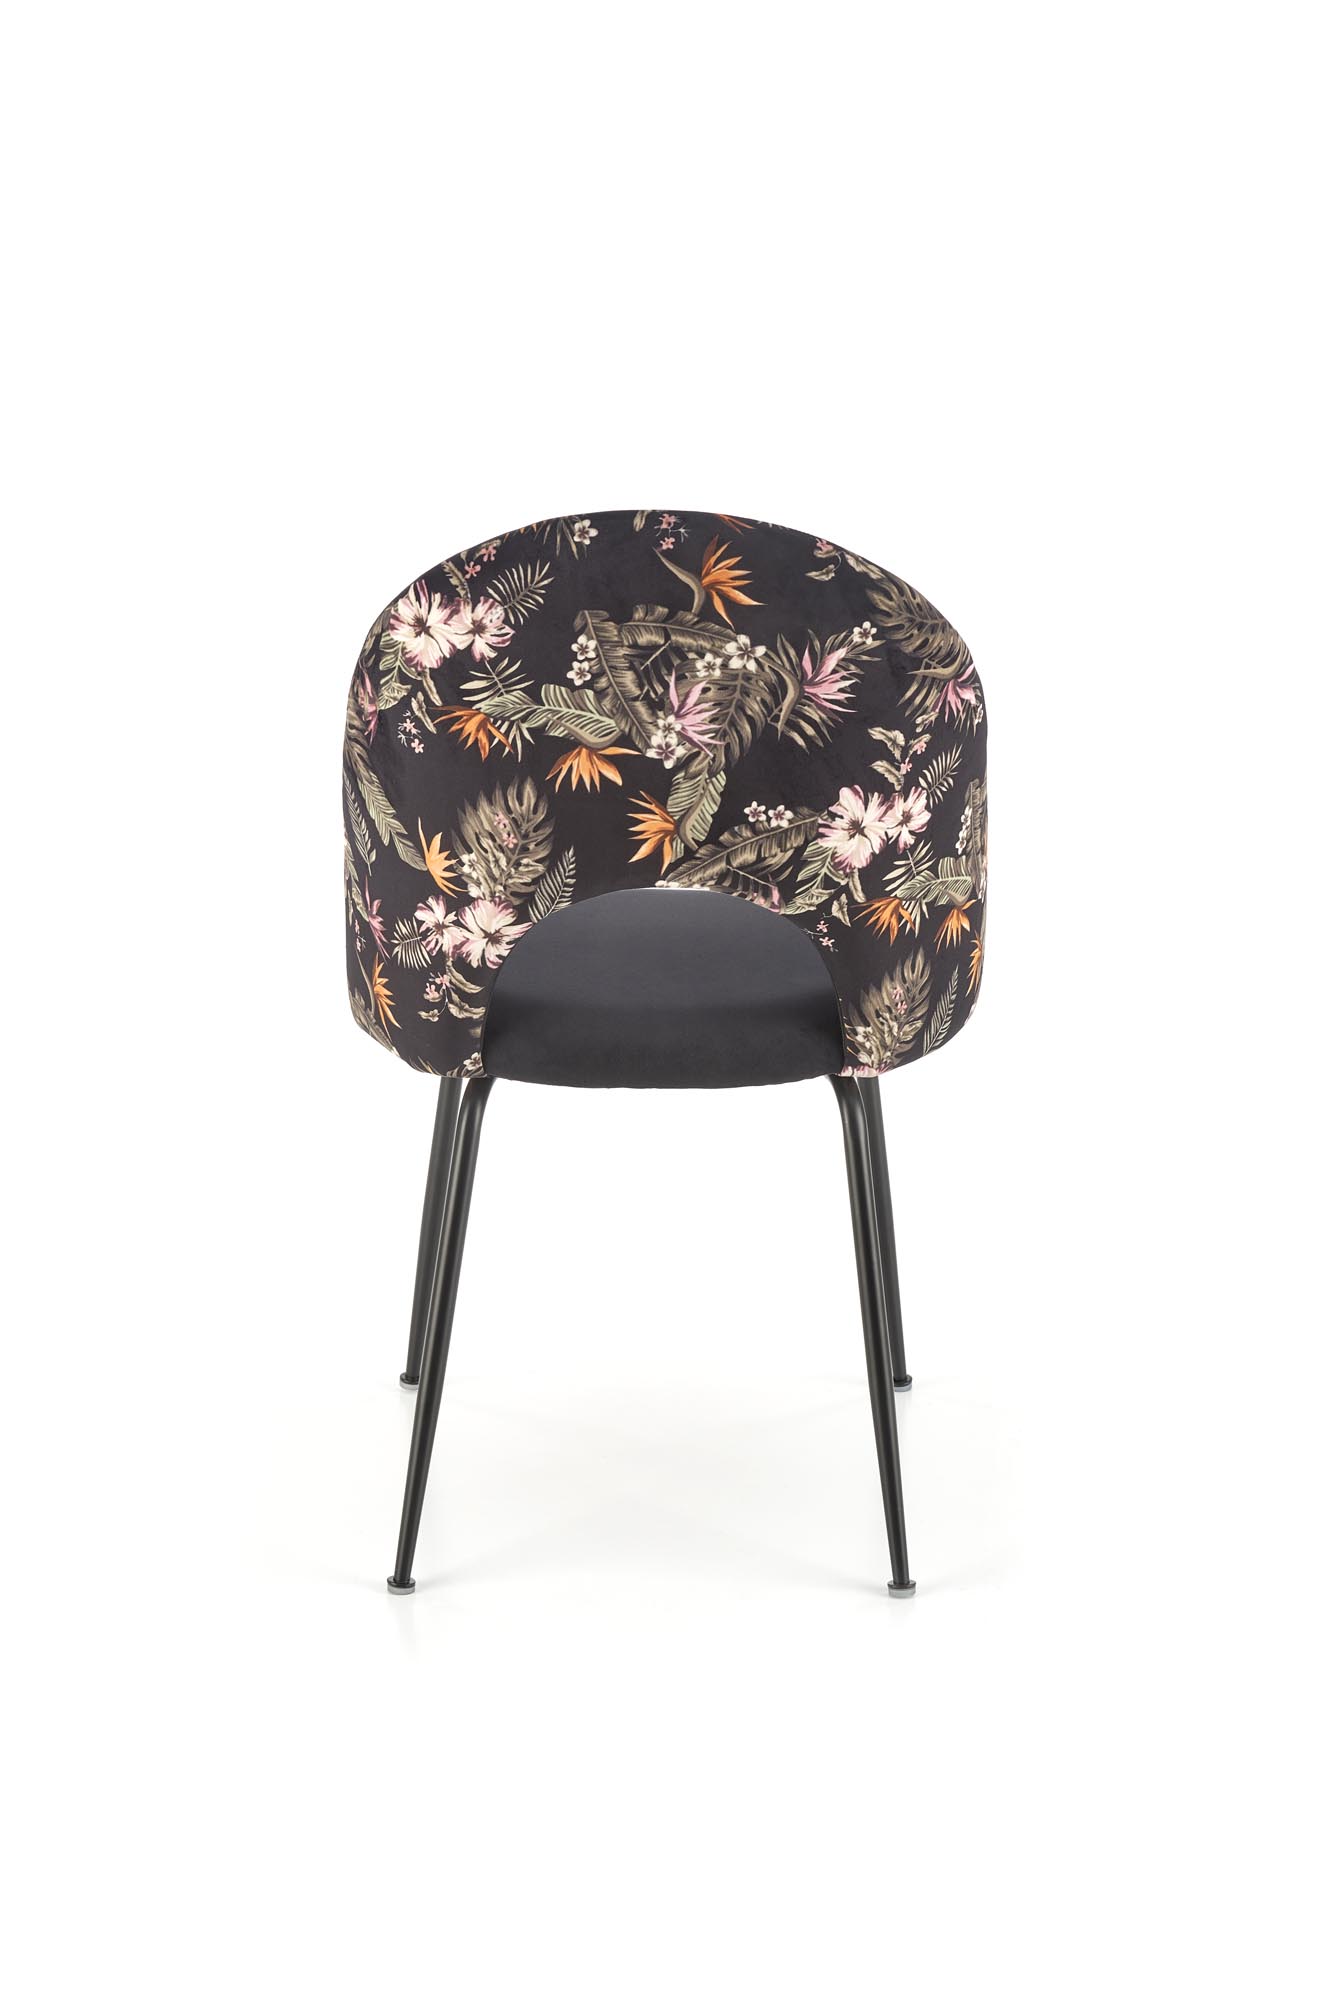 Krzesło tapicerowane K505 - czarny krzesło tapicerowane k505 - czarny